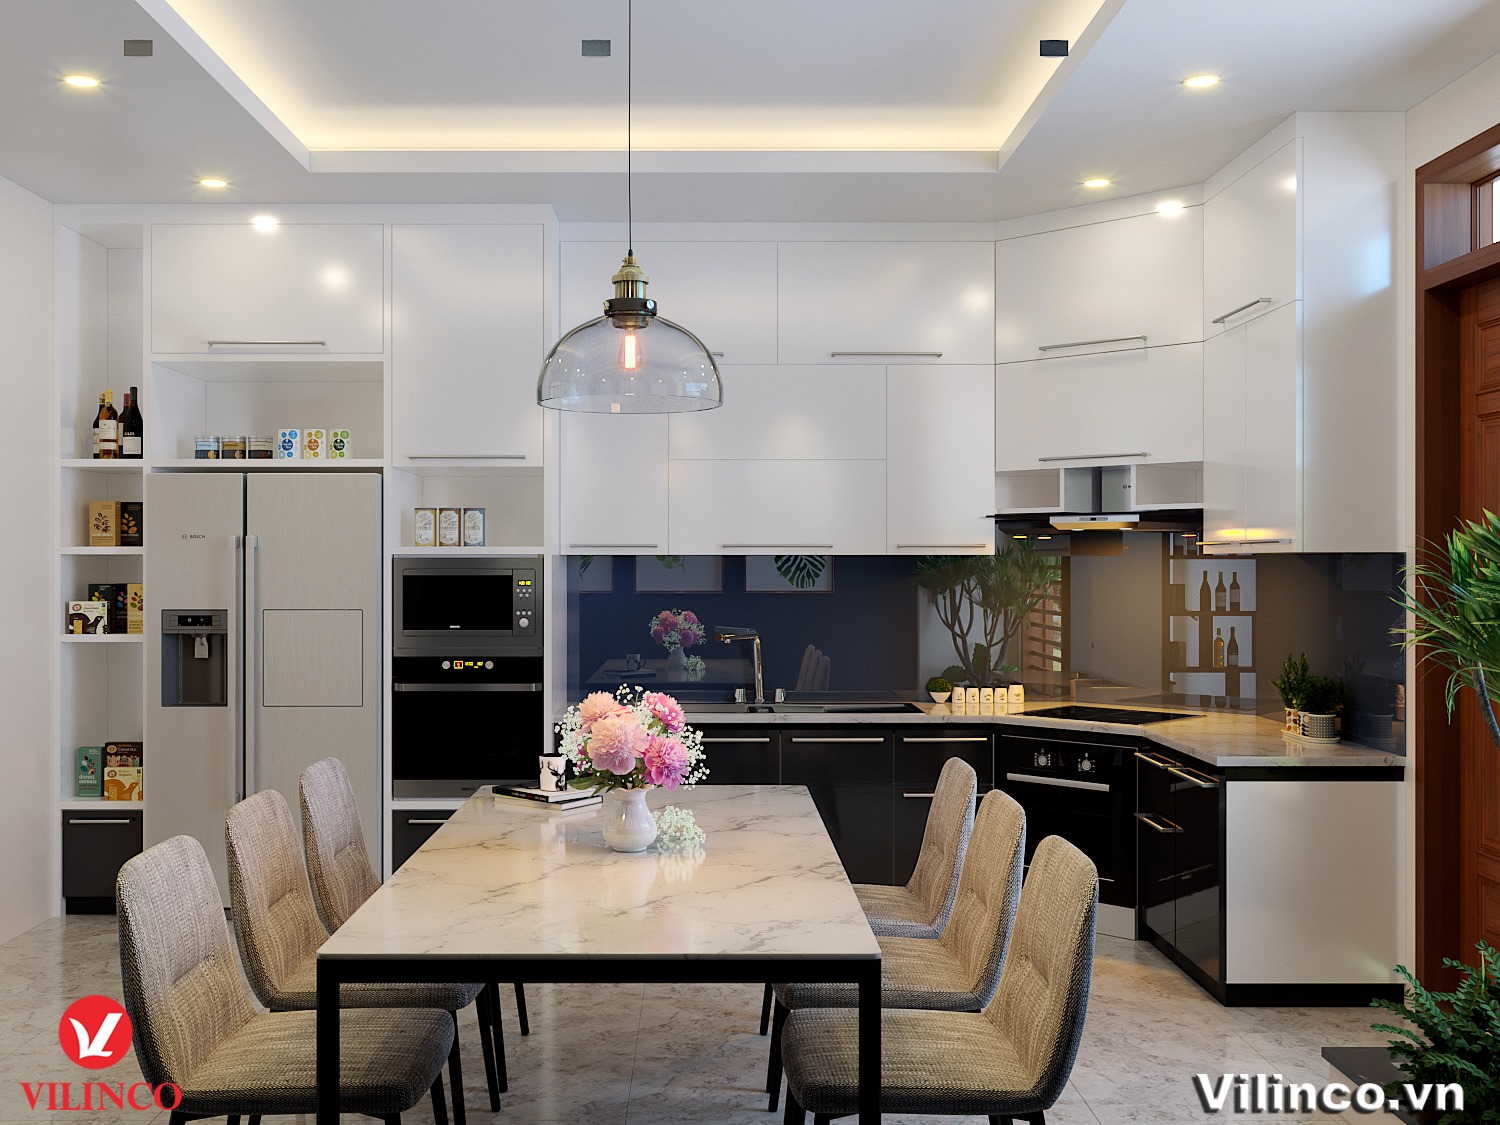 Đến năm 2024, trần thạch cao trang trí phòng bếp đang trở thành xu hướng HOT tại Việt Nam. Không chỉ giúp tăng tính thẩm mỹ cho không gian bếp, trần thạch cao còn mang đến nhiều lợi ích cần thiết như giảm tiếng ồn, tăng cường ánh sáng và đảm bảo vệ sinh.